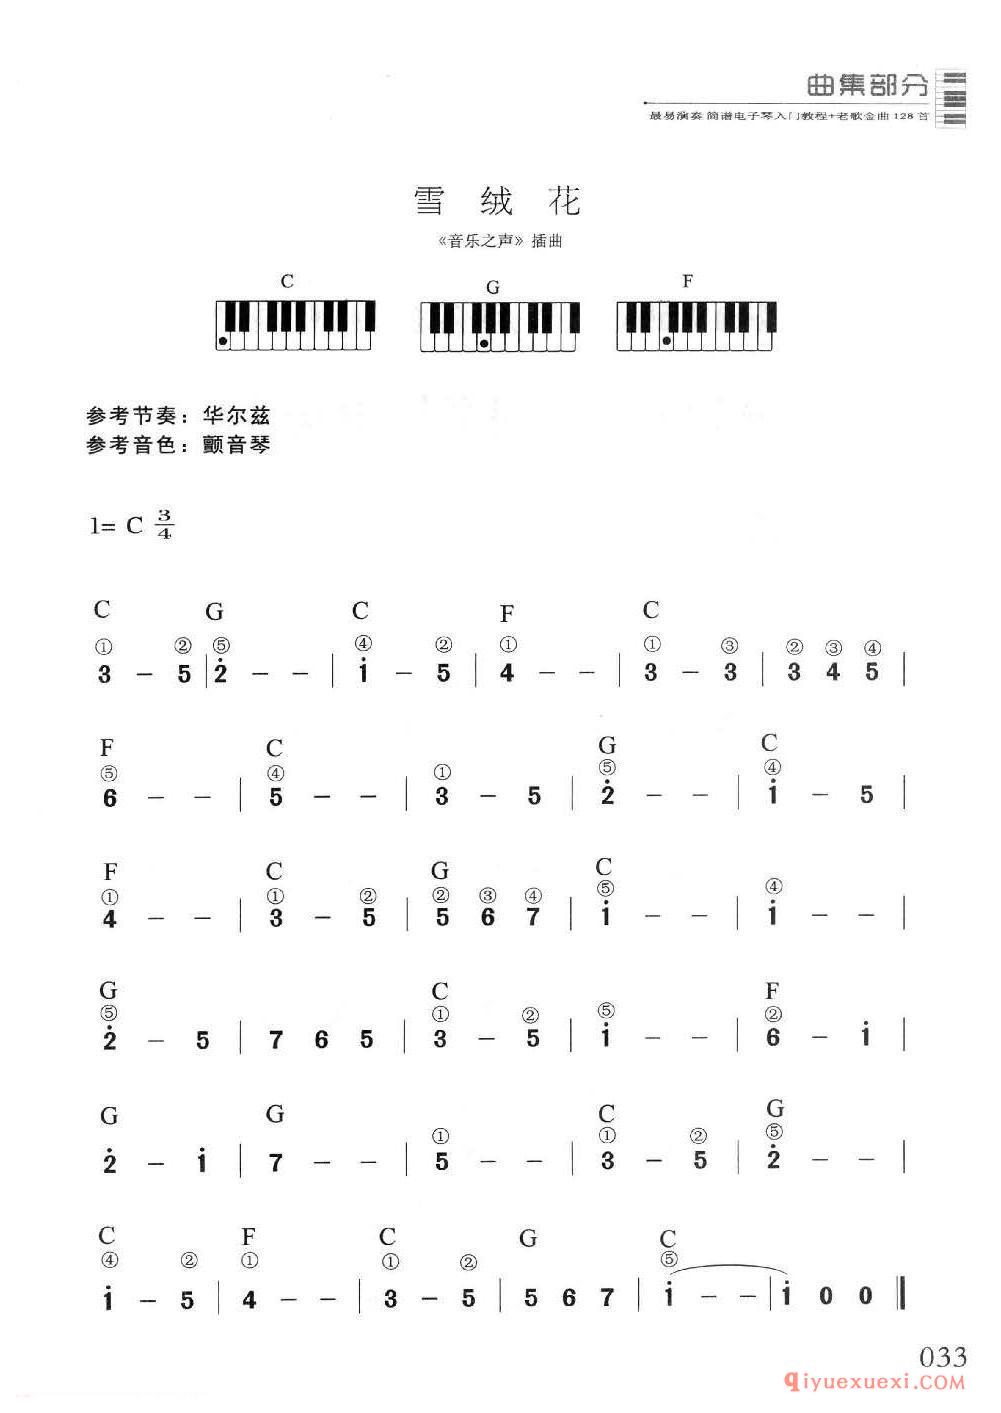 电子琴单指和弦入门练习曲 | 雪绒花(1=C 3/4)简谱带和弦